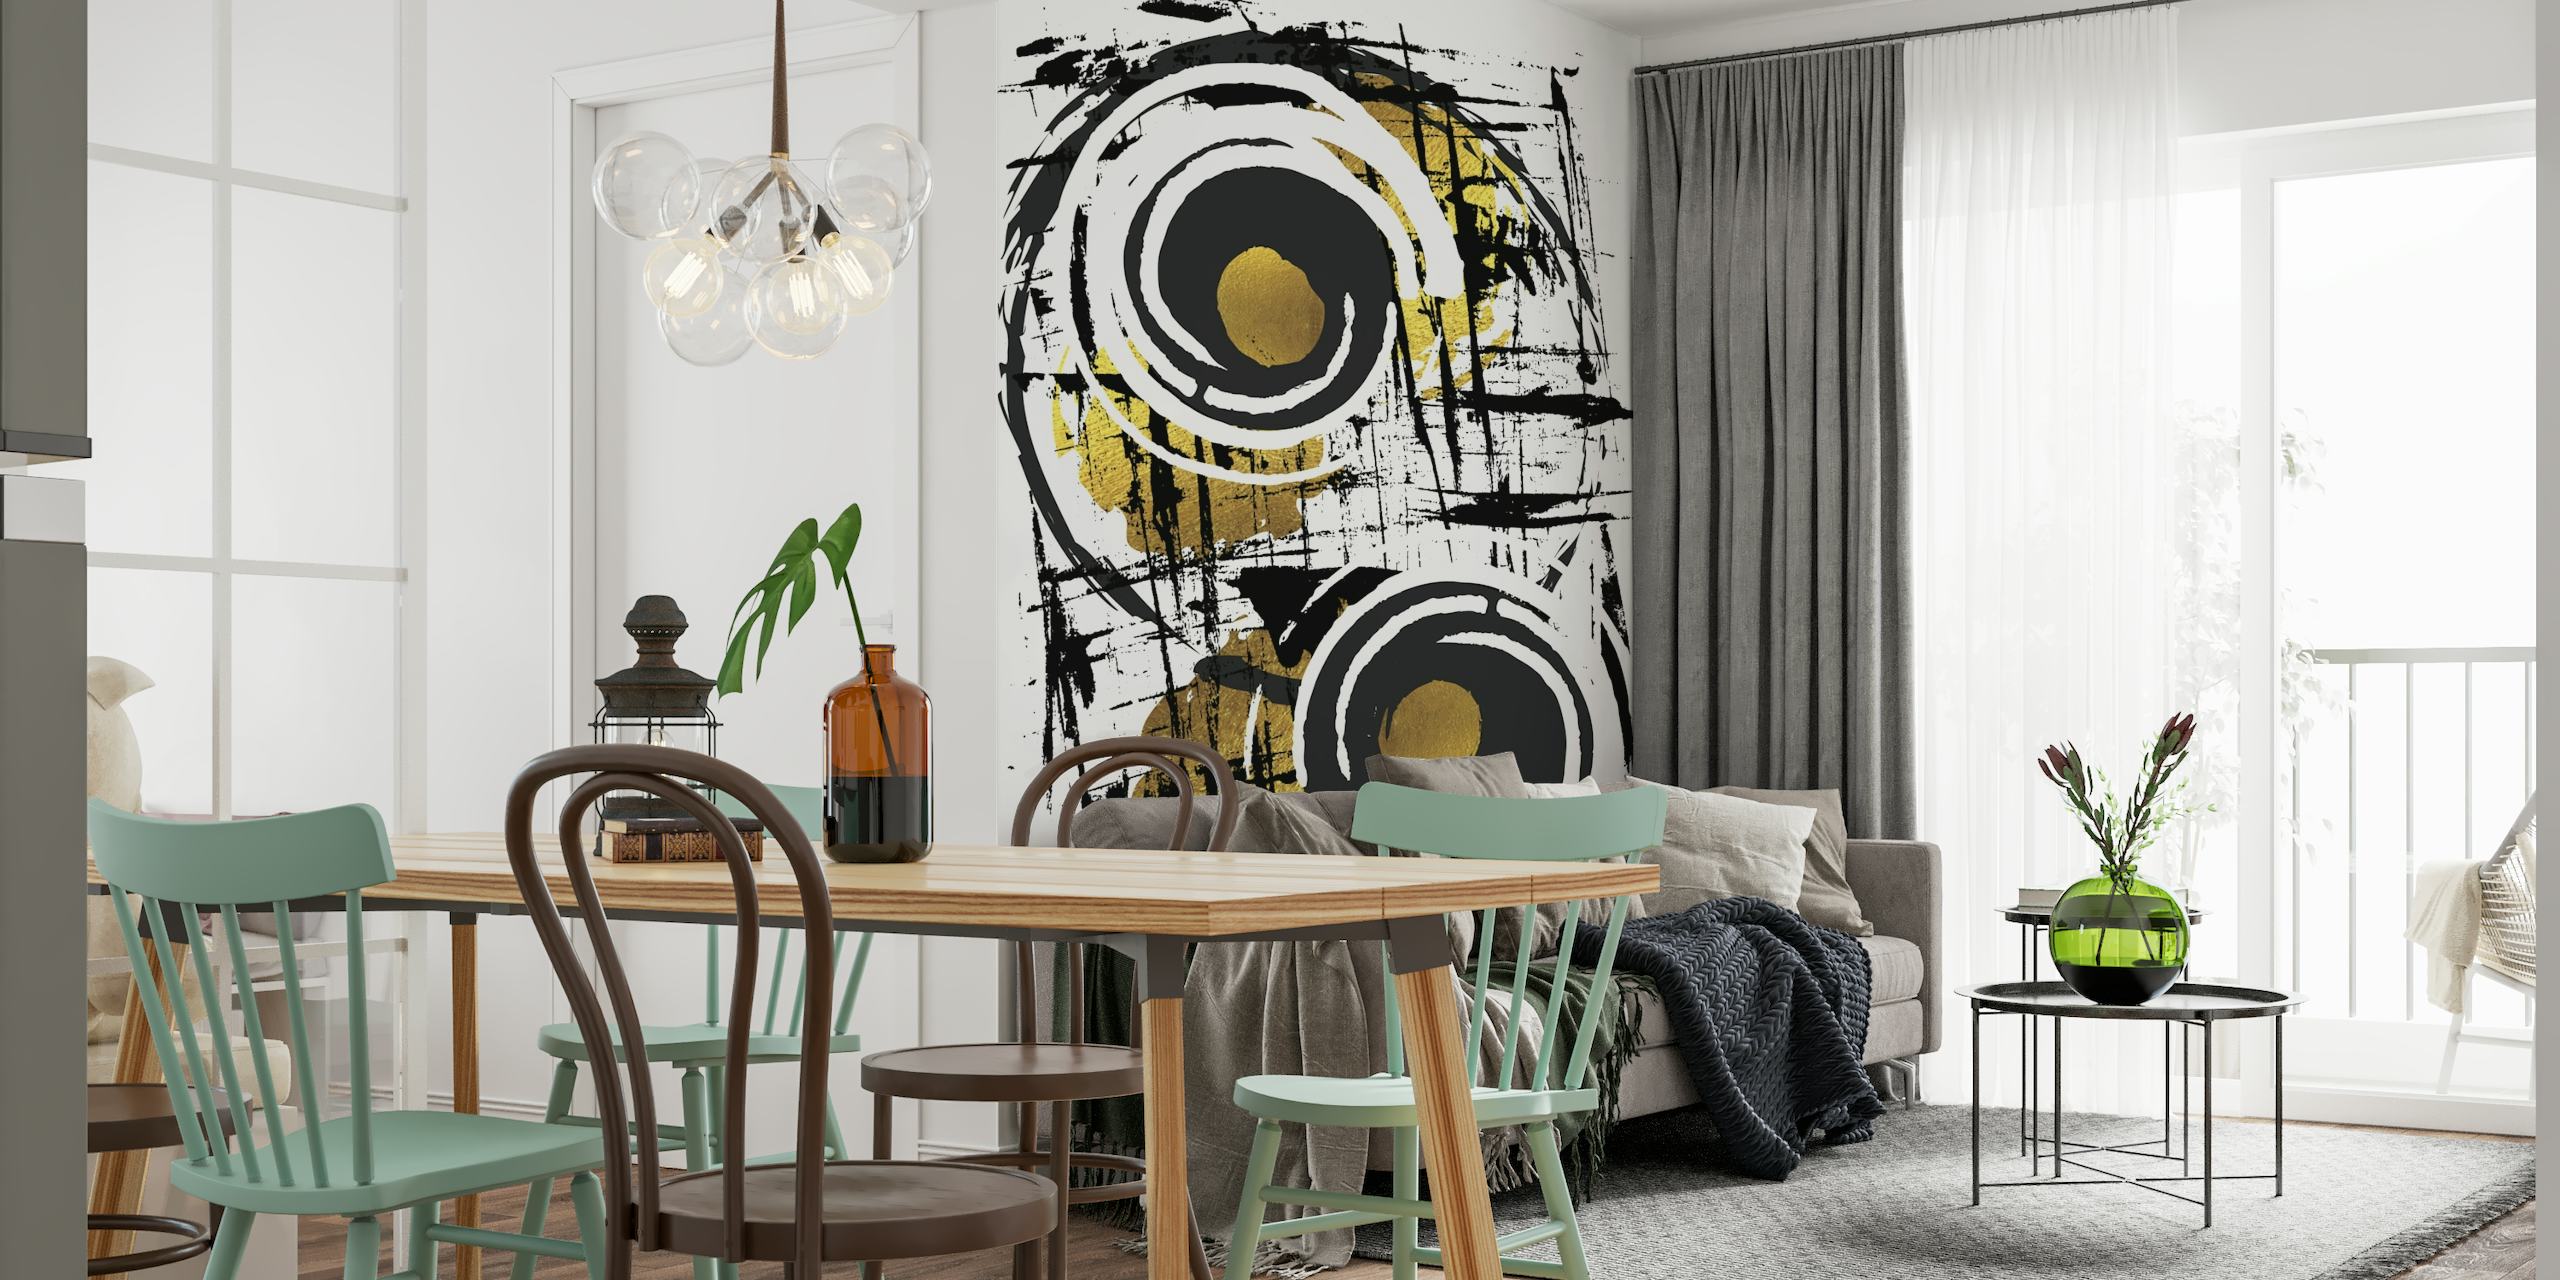 ARTE ABSTRACTO Hipnotizante mural de pared con pinceladas negras y círculos dorados sobre fondo blanco.